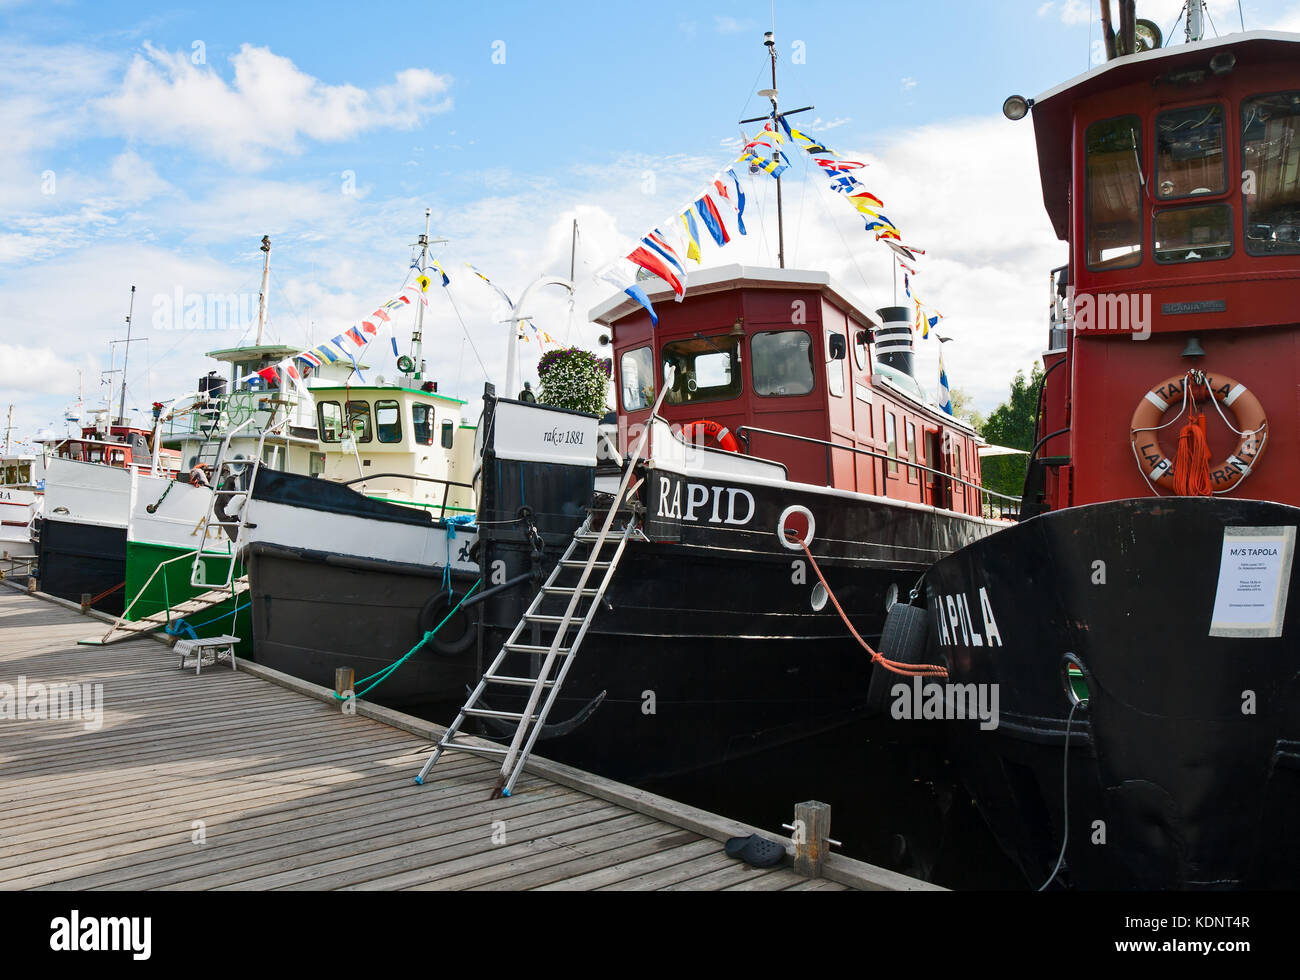 Lappeenranta, Finlande - le 21 juillet 2013 - régate vieux navire à moteur. bateaux construits au début du siècle dernier, amarré au quai de Lappeenranta. Banque D'Images